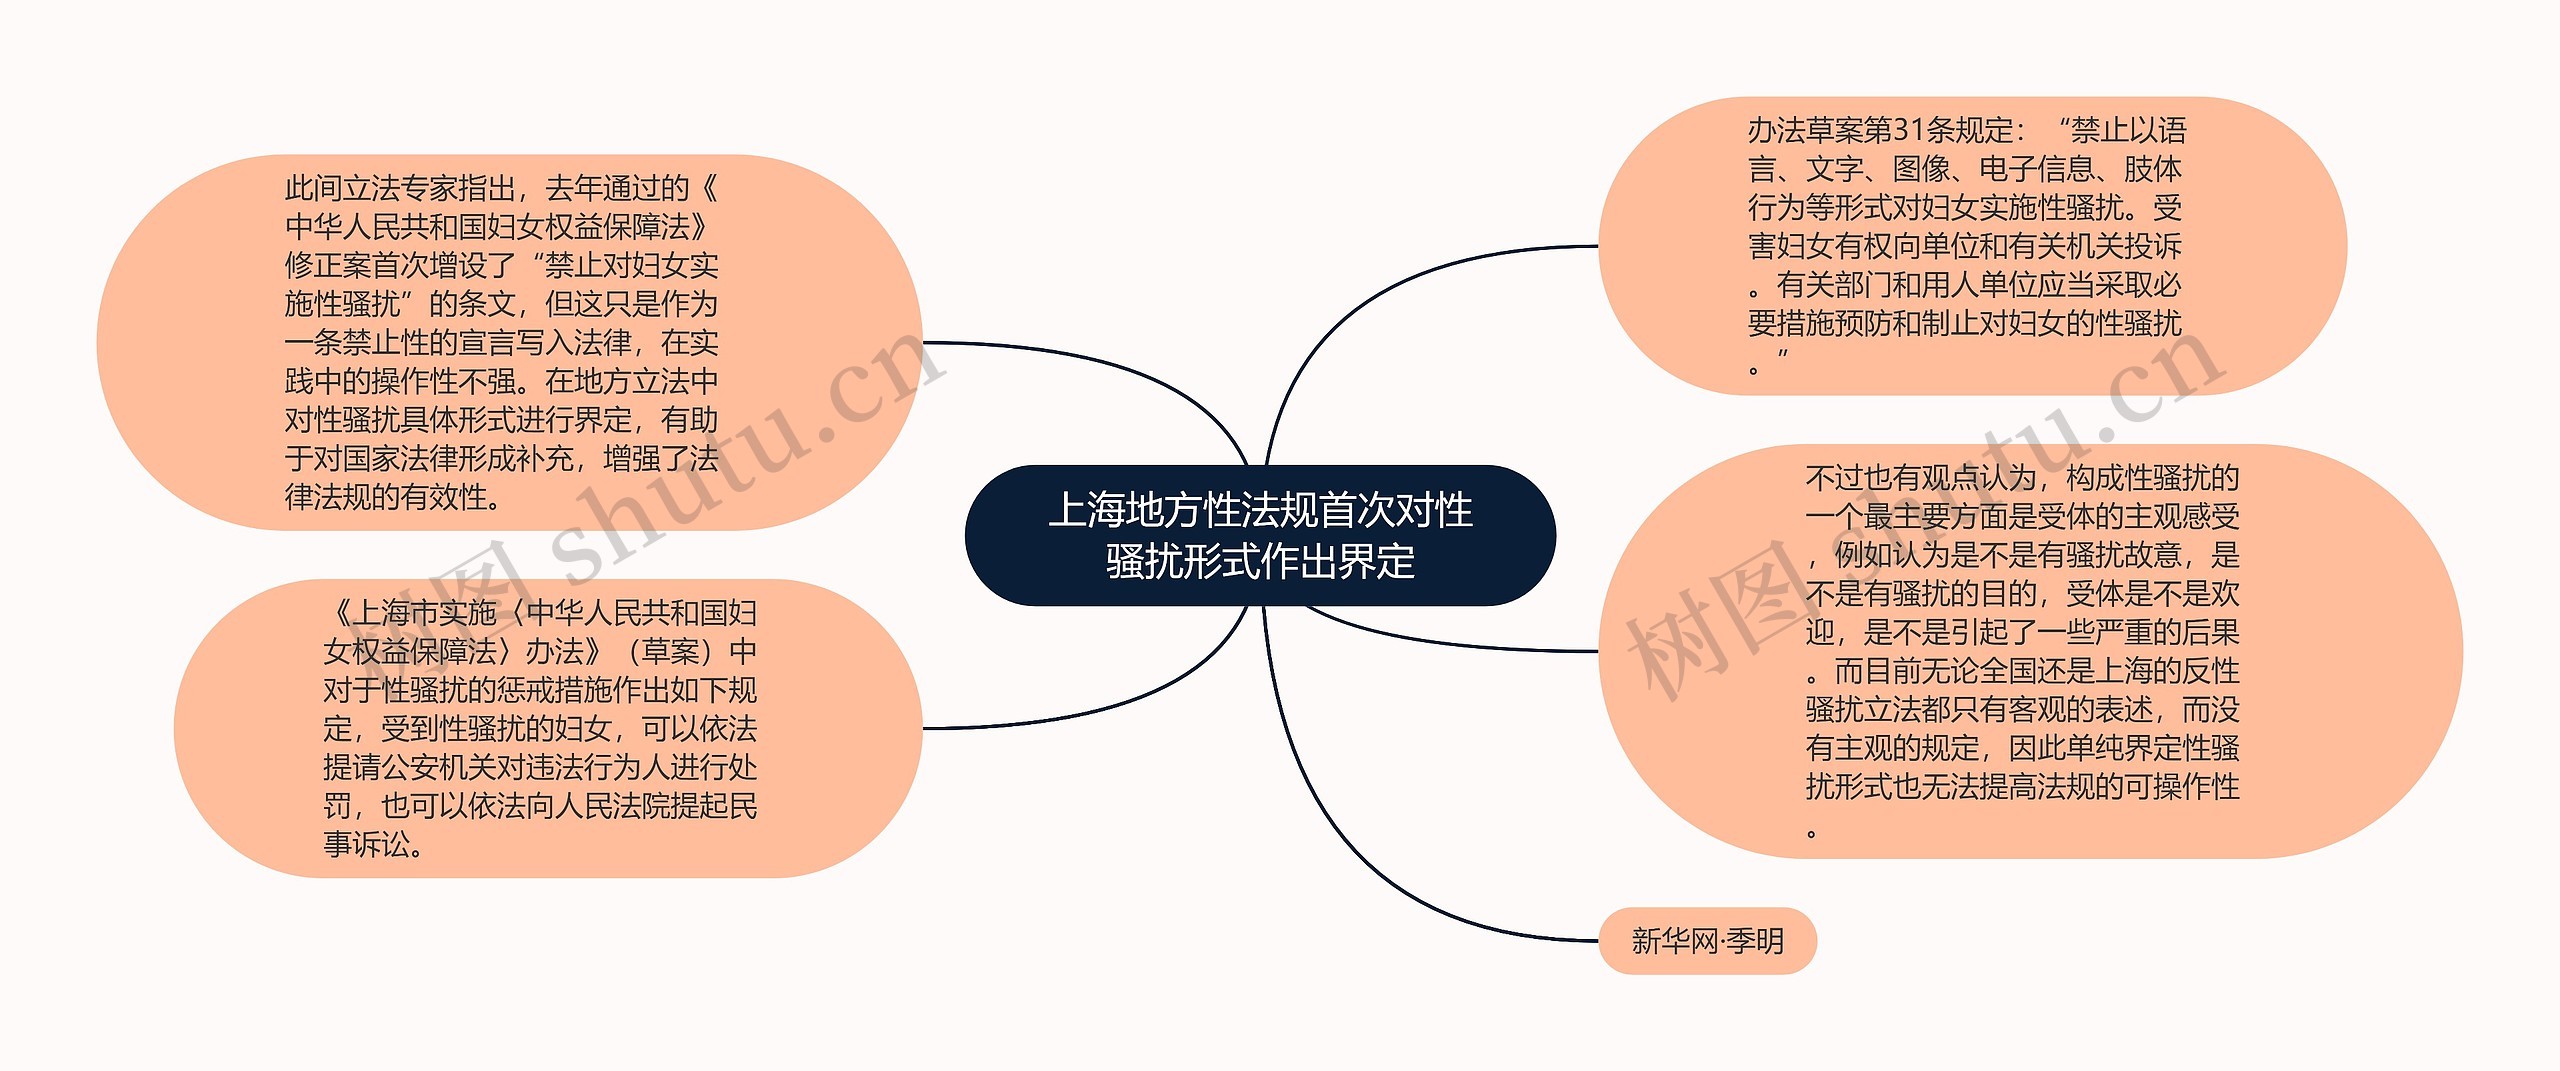 上海地方性法规首次对性骚扰形式作出界定思维导图